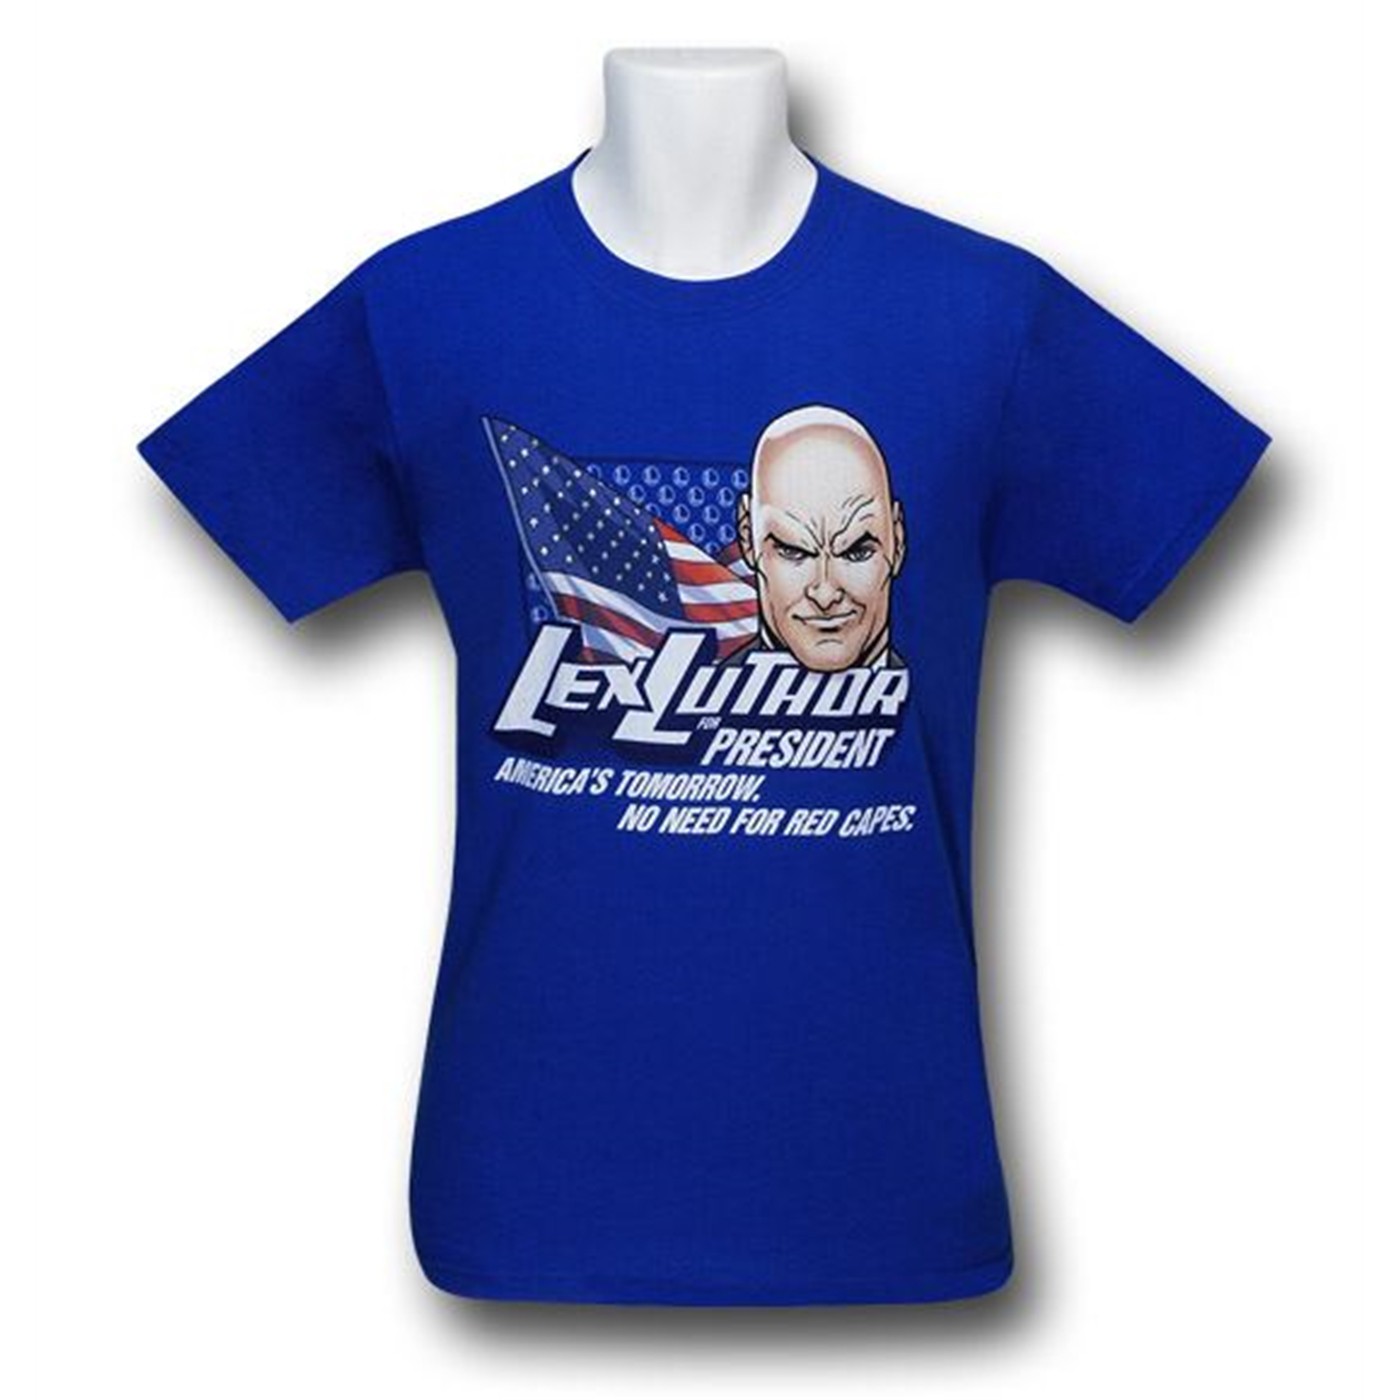 Lex Luthor for President T-Shirt